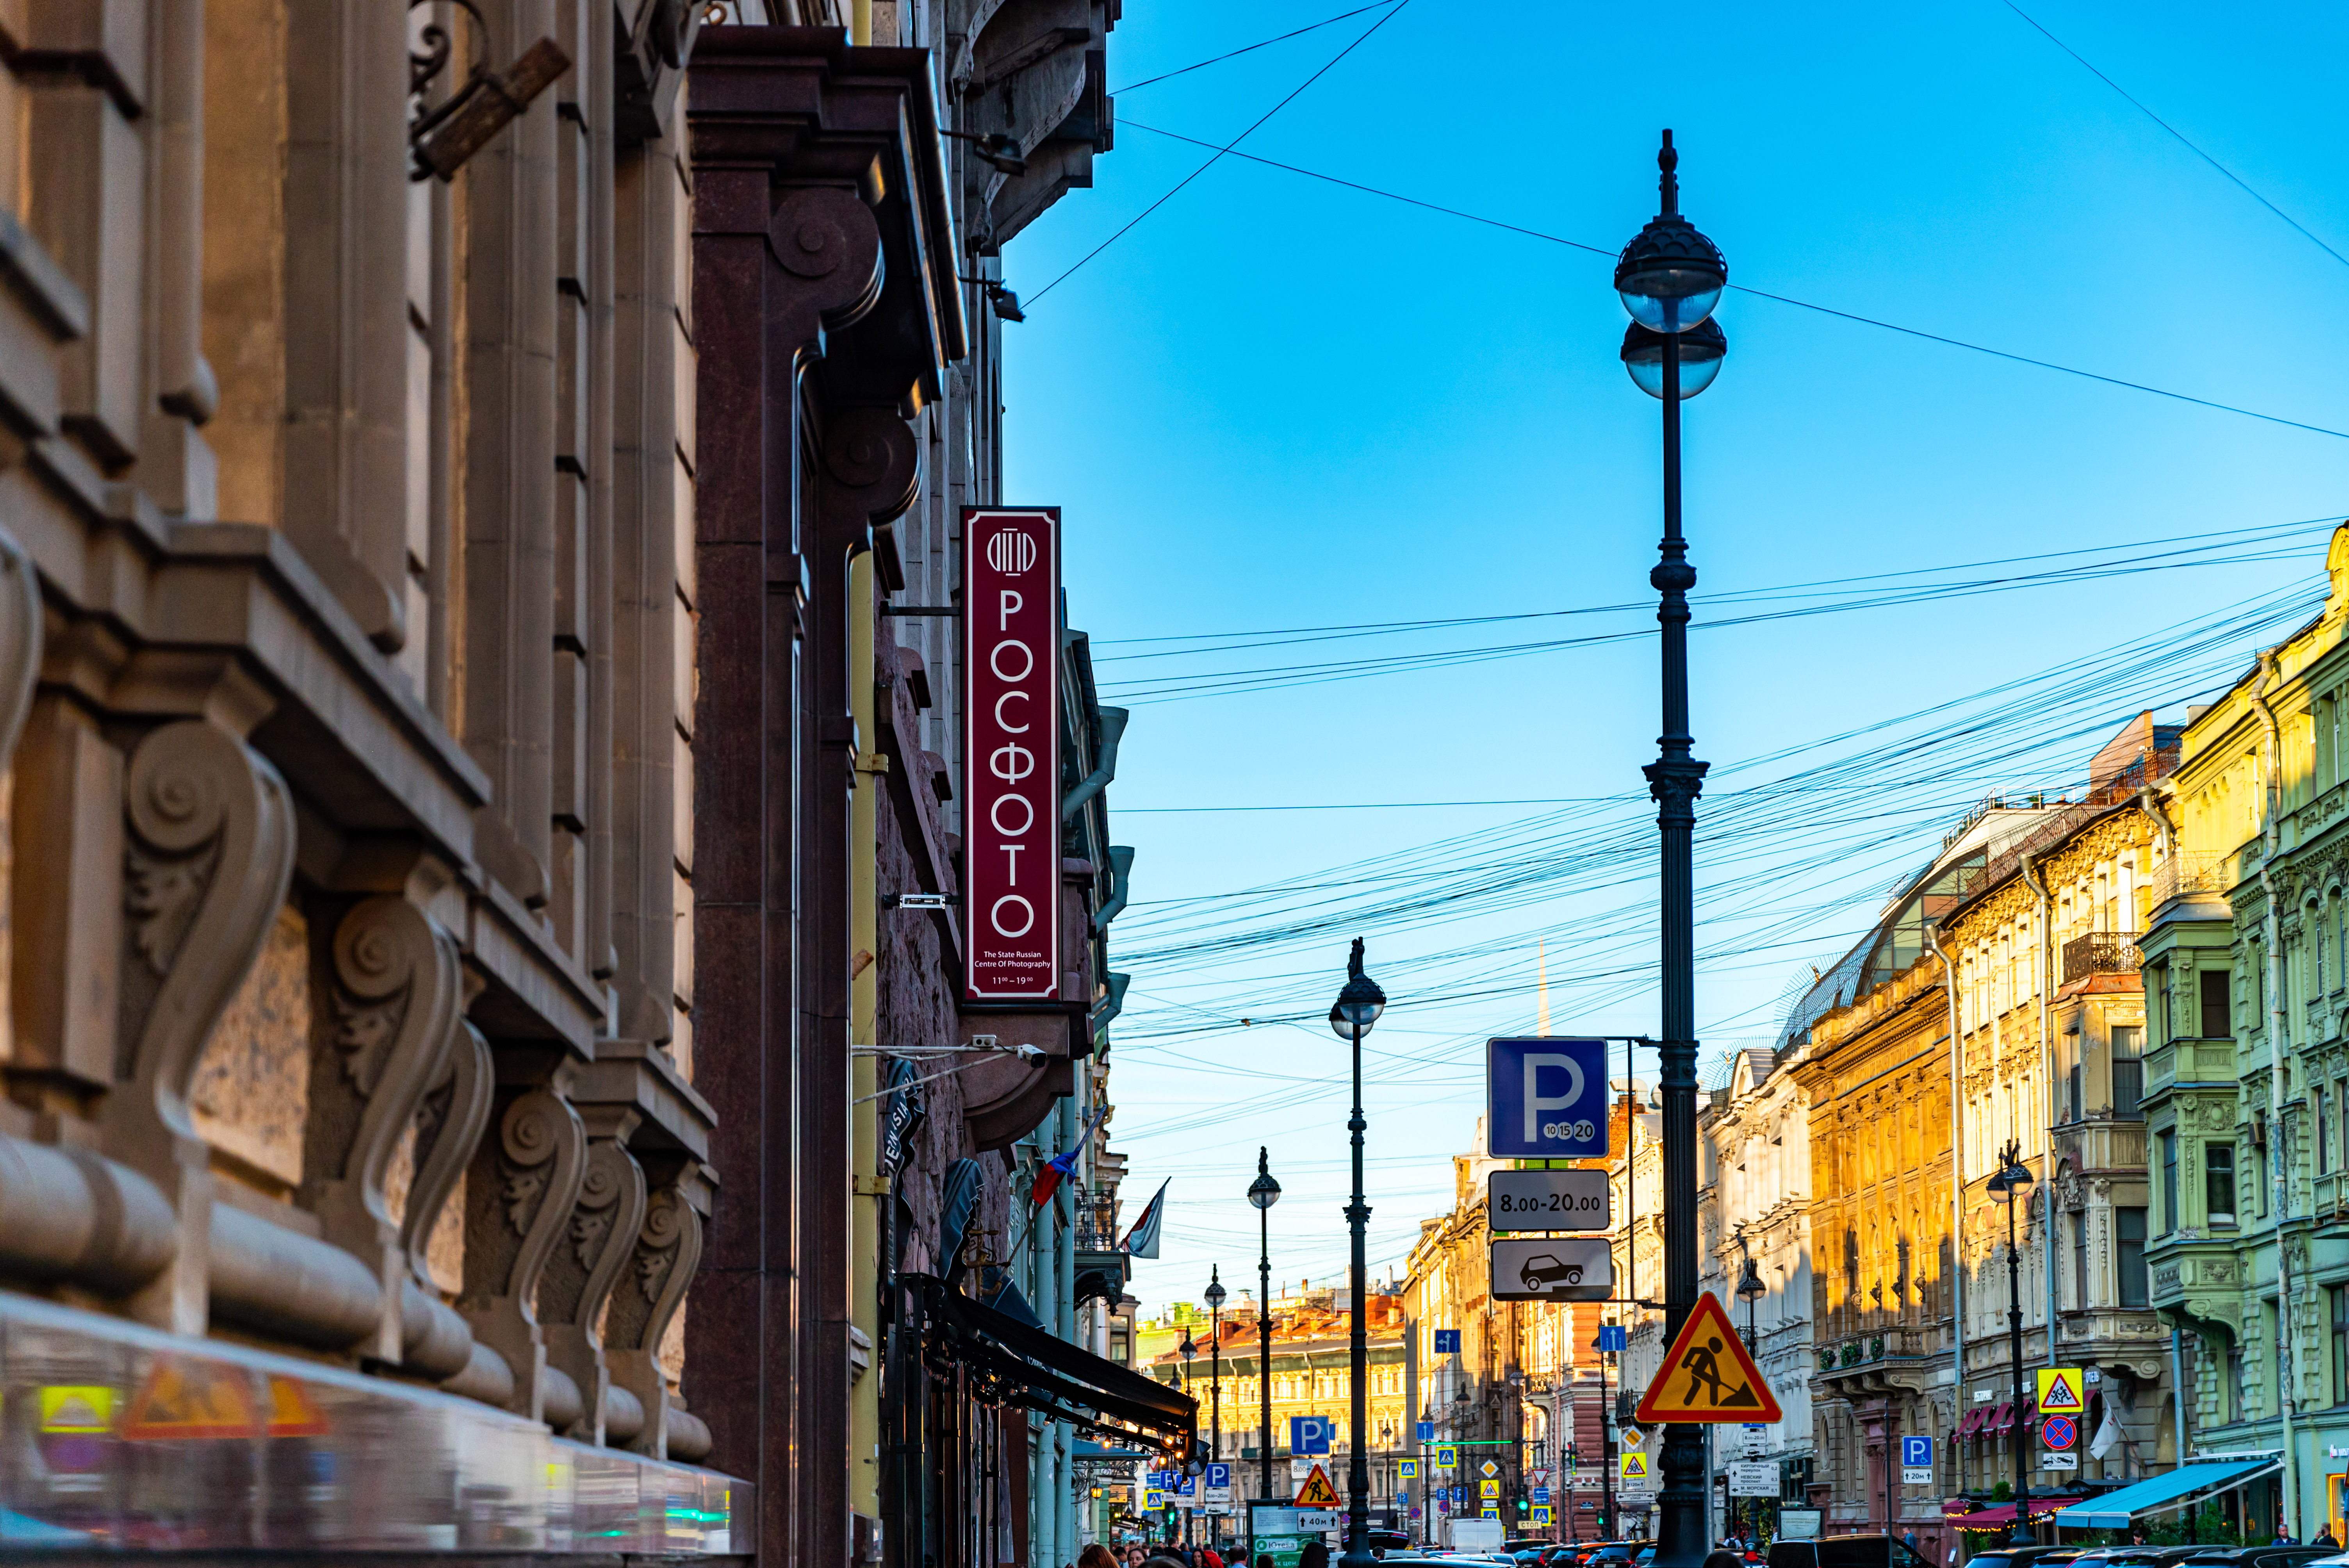 Bolshaya Morskaya Street